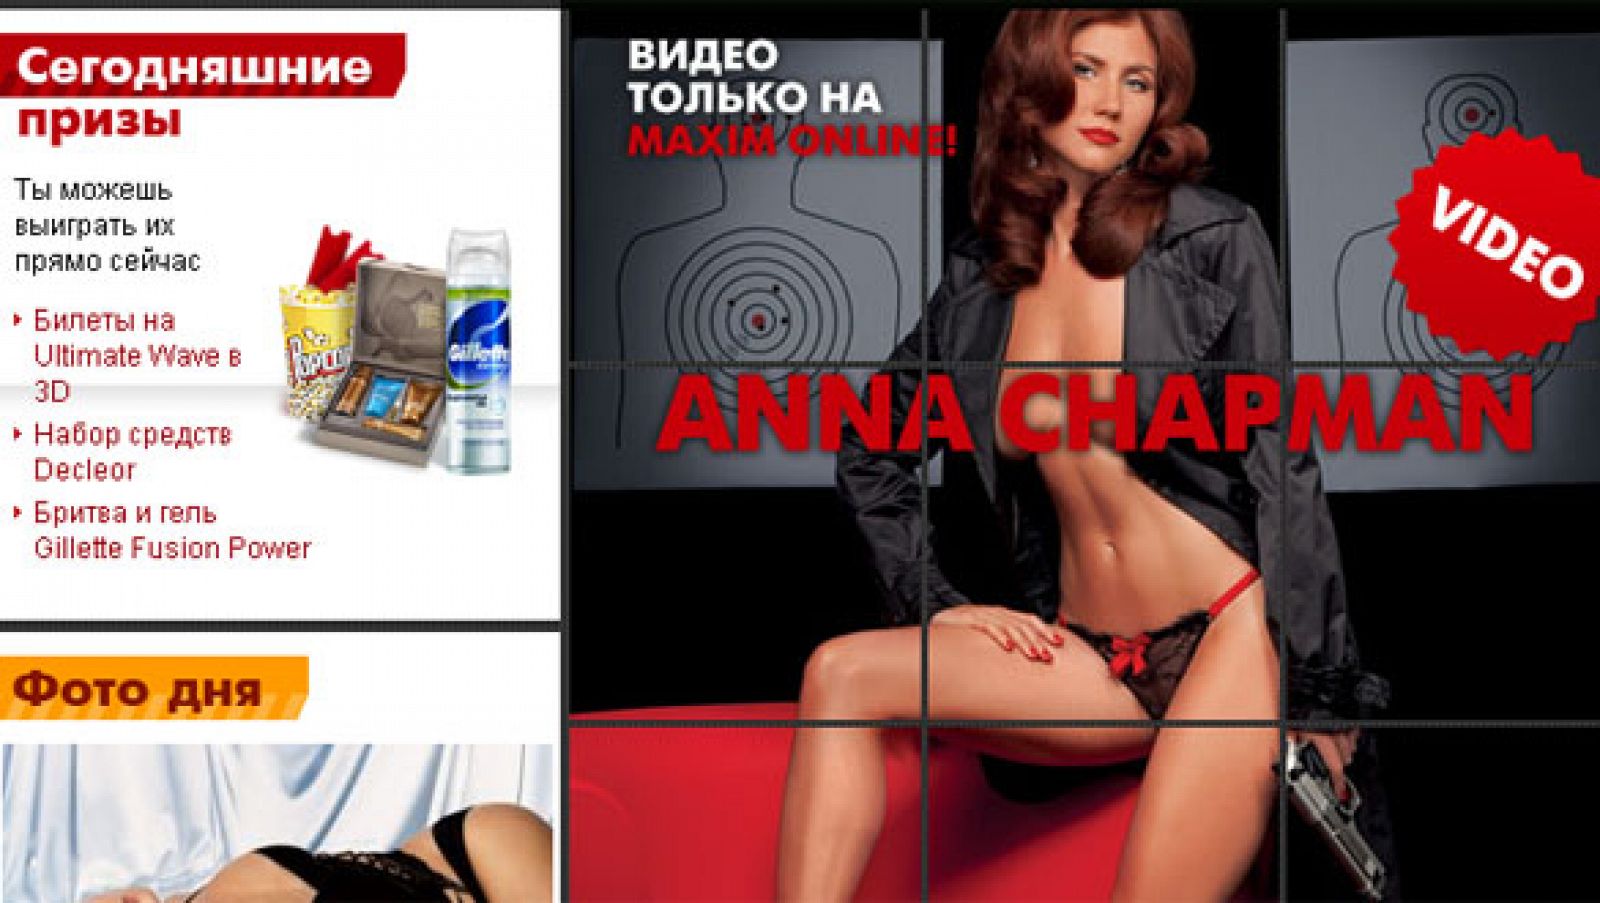 Anna Chapman, portada de la revista Maxim